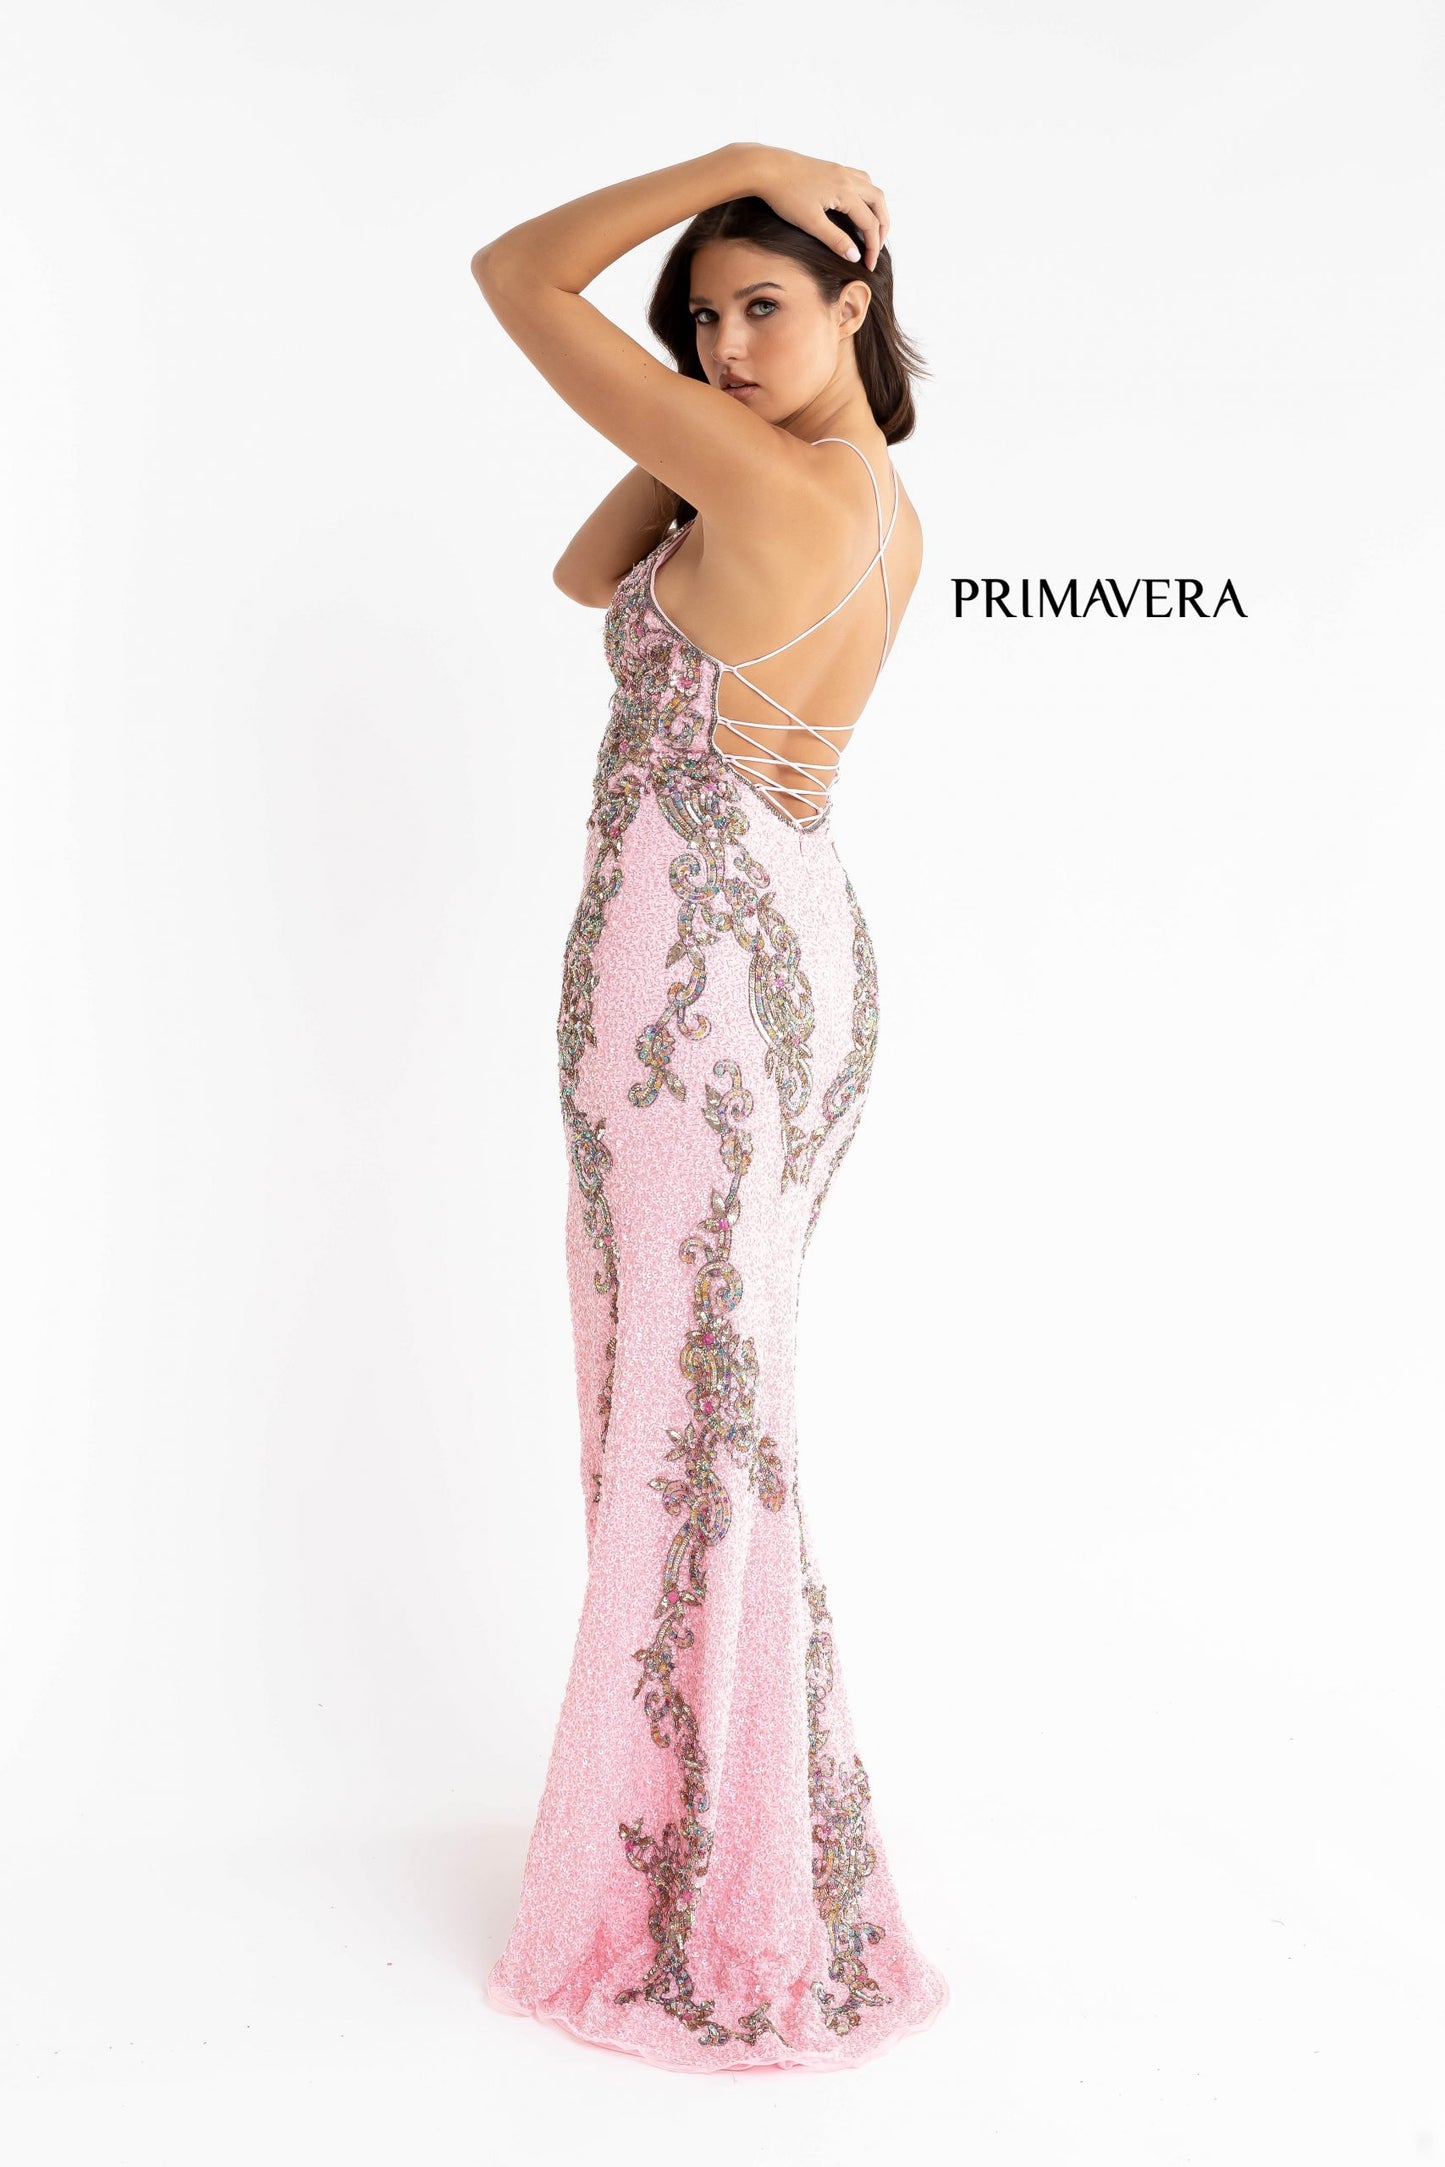 Primavera-couture-3211-PINK-prom-dress-back-v-neckline-floral-sequins-lace-up-tie-back-slit